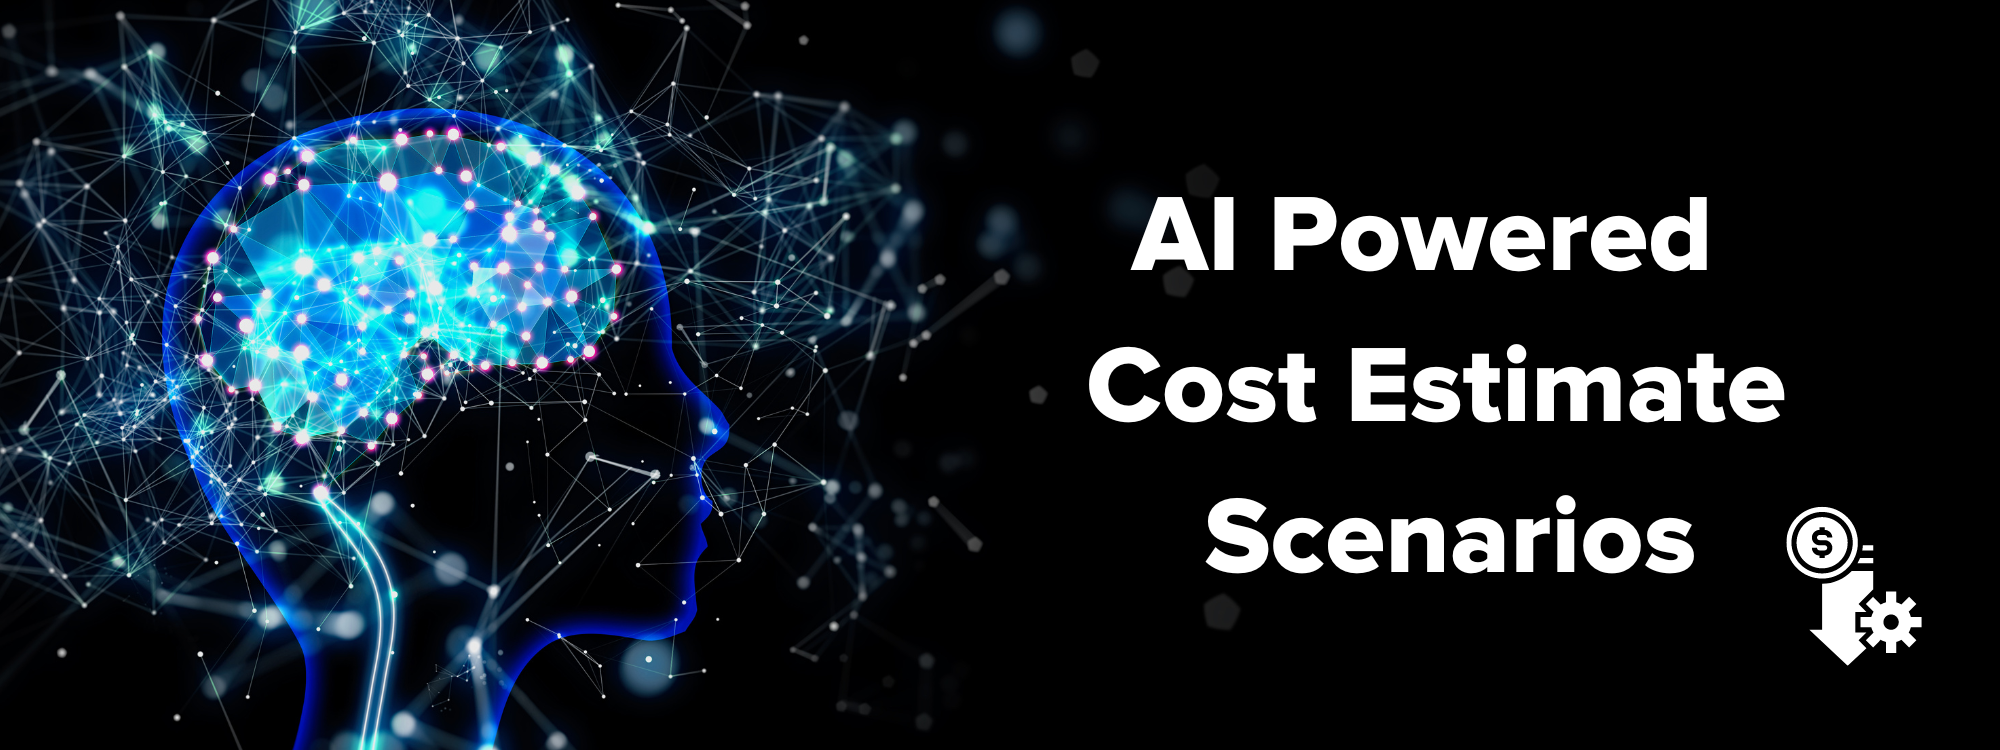 AI Powered Cost Estimate Scenarios